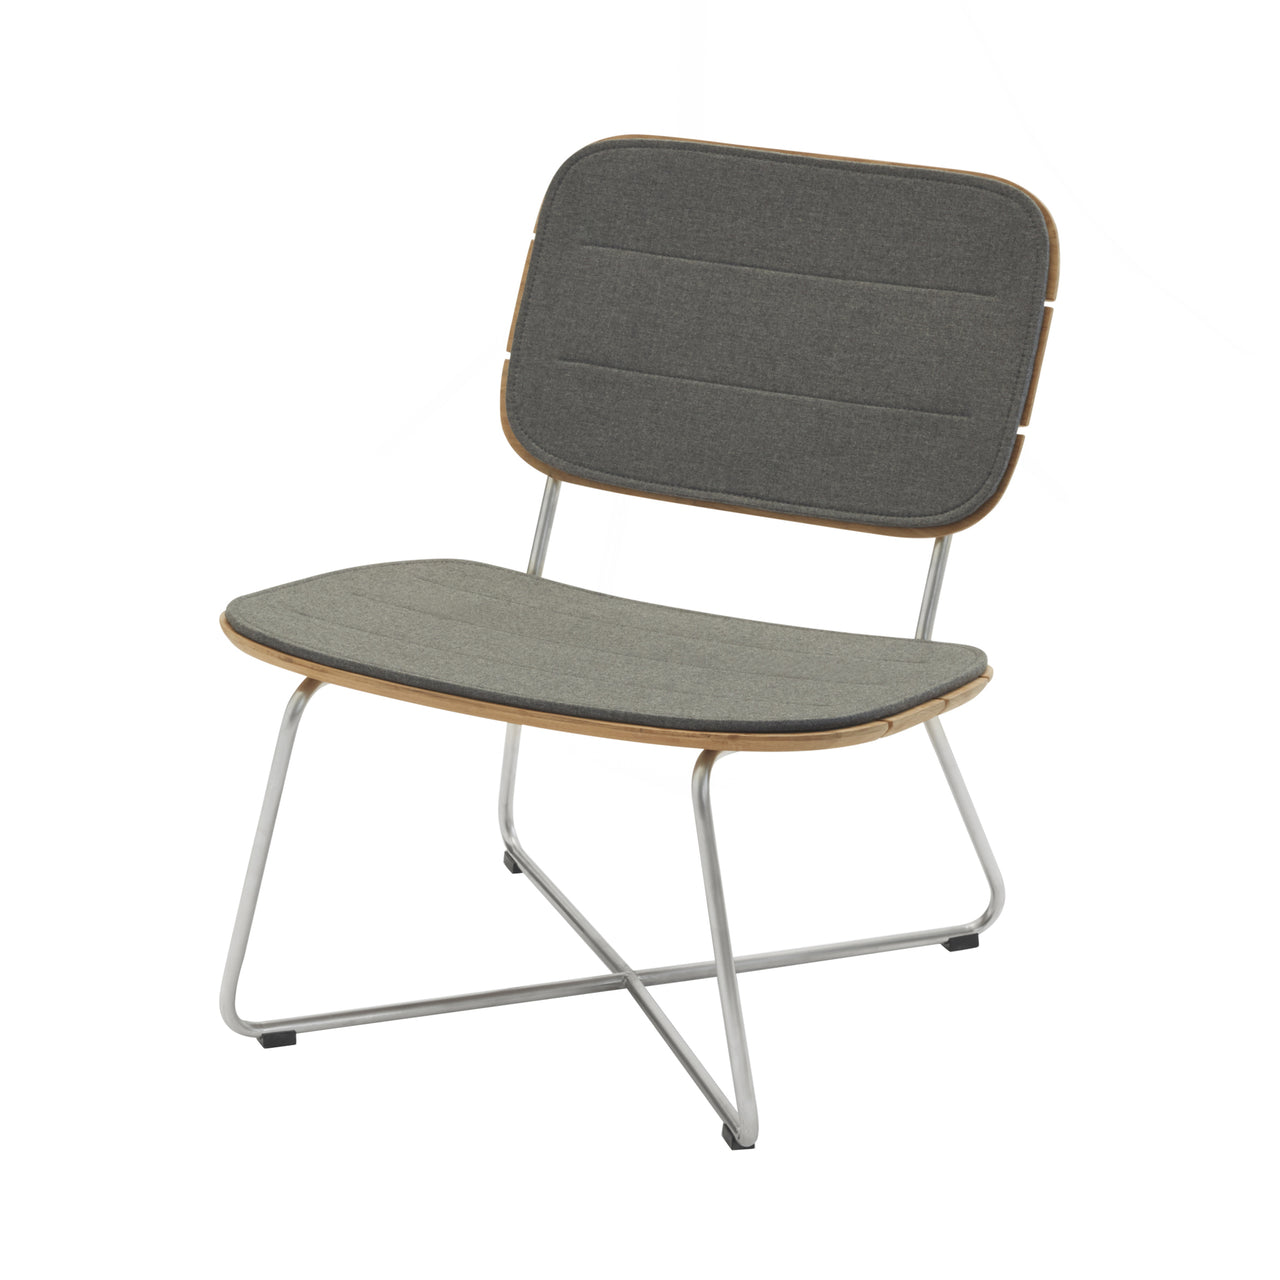 Lilium Lounge Chair: Charcoal Cushion